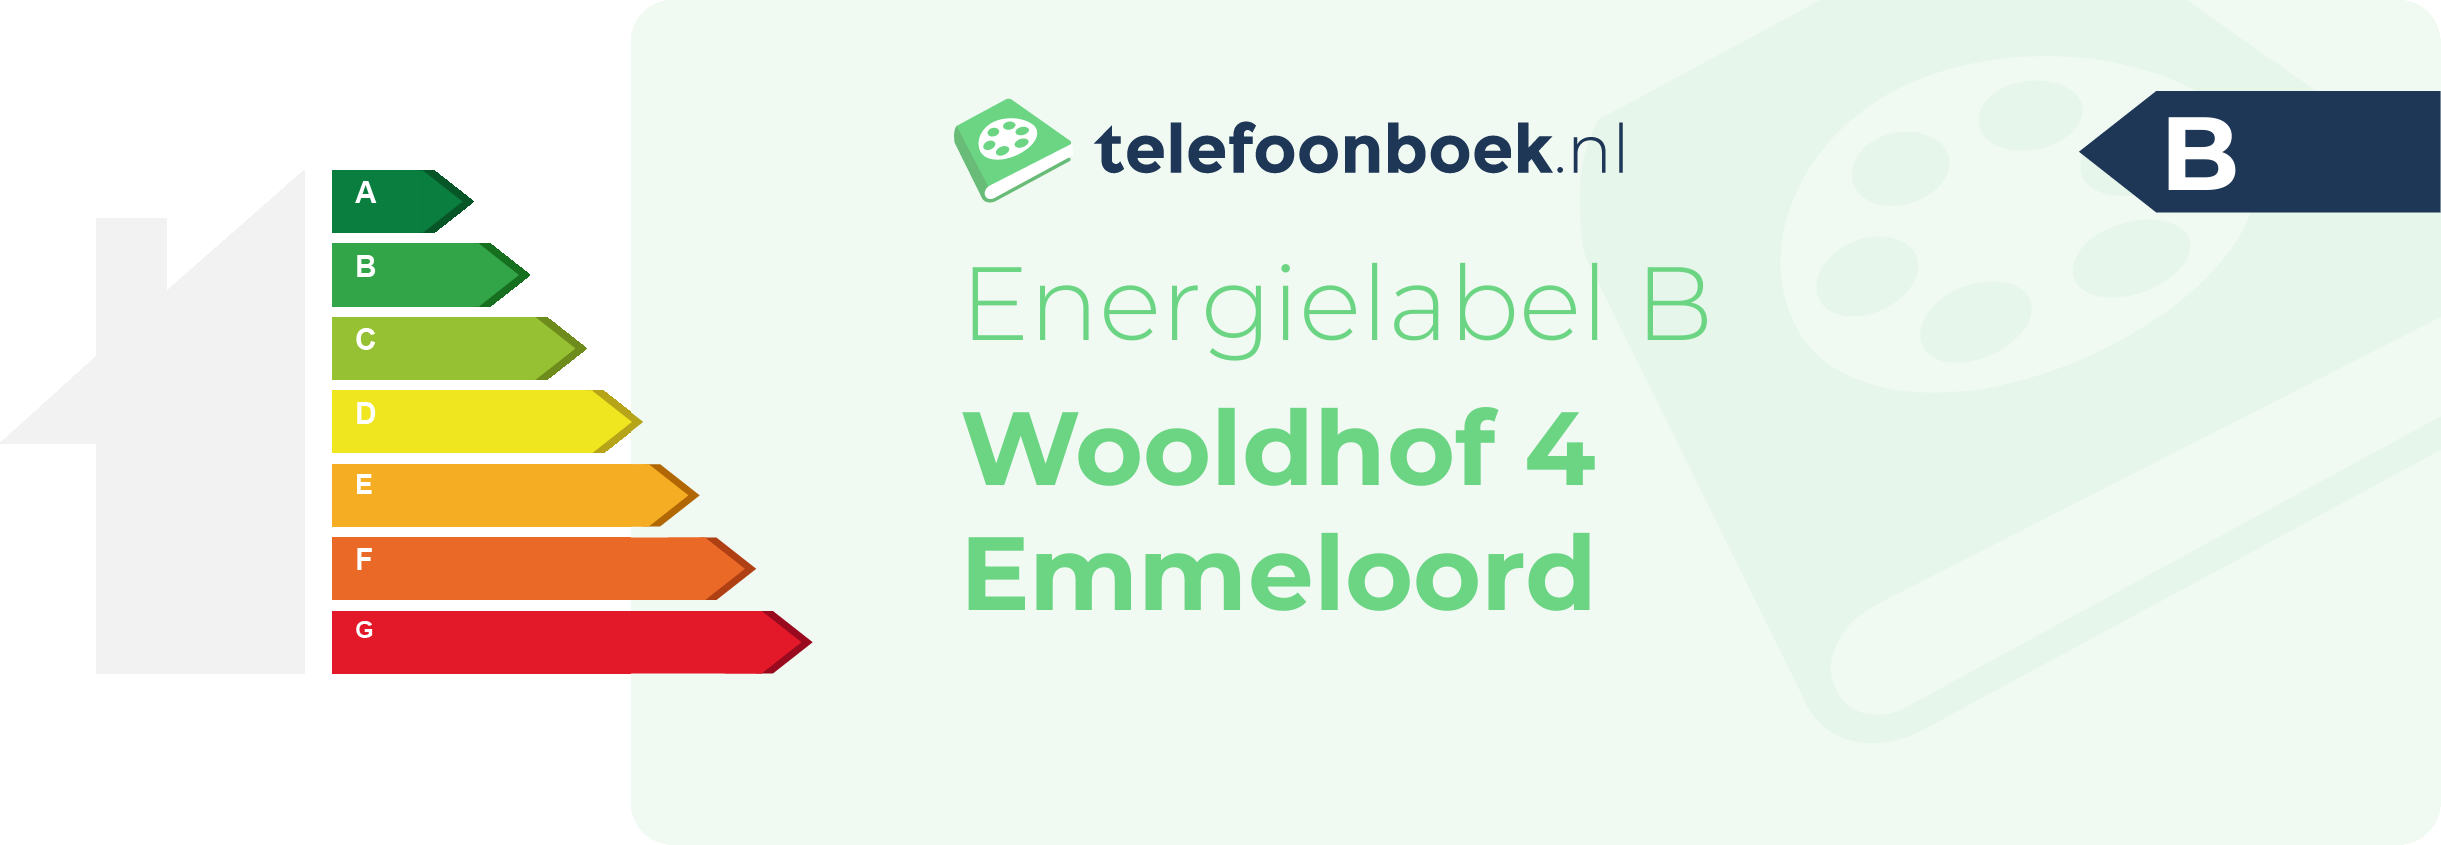 Energielabel Wooldhof 4 Emmeloord